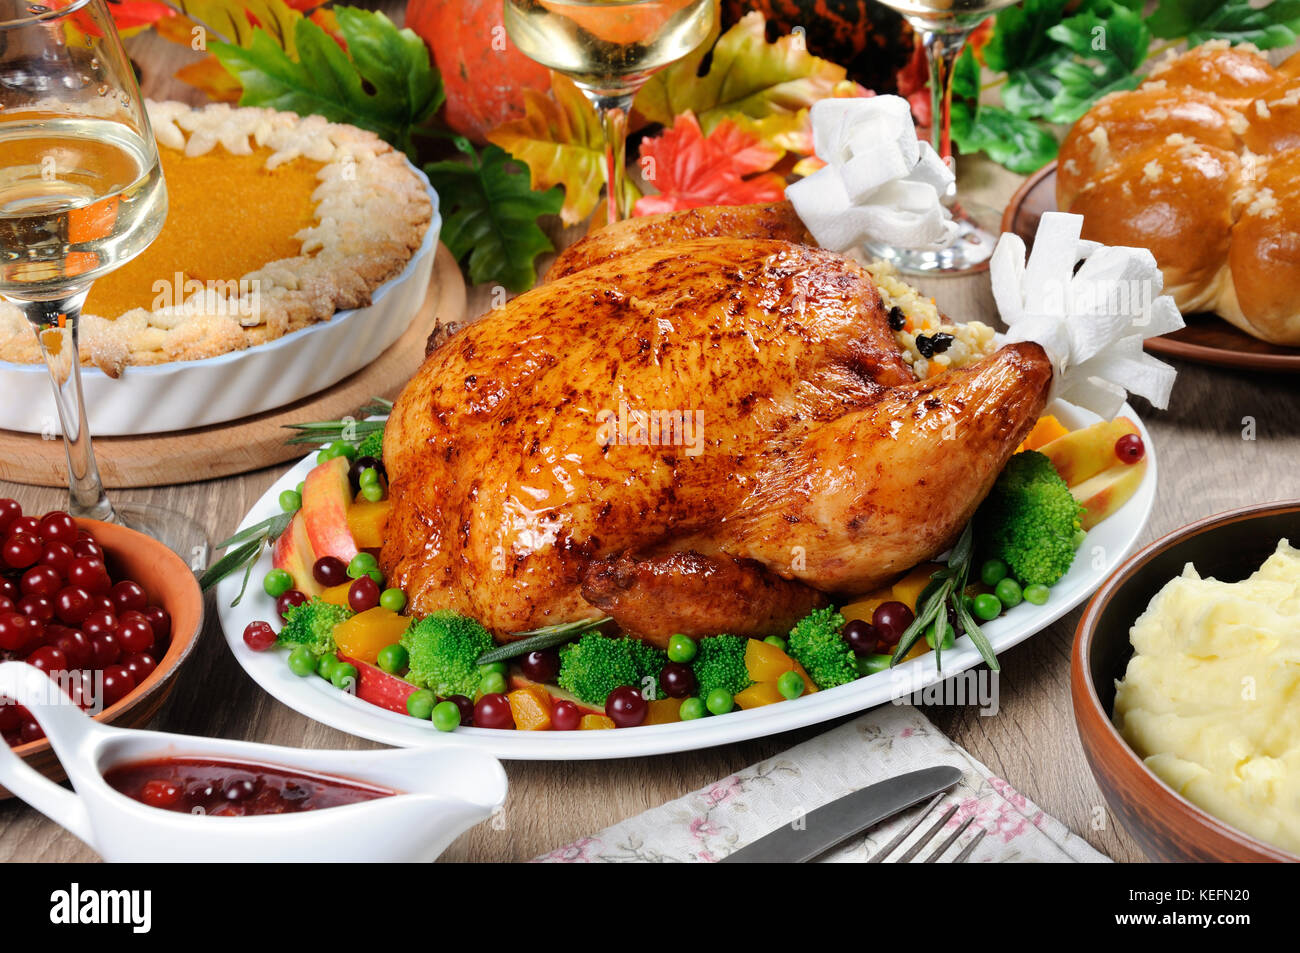 La Turquie au four avec légumes, tarte au potiron, purée de pommes de terre, pains à l'ail et la sauce aux canneberges et à l'orange sur la table le dîner le jour de Thanksgiving Banque D'Images